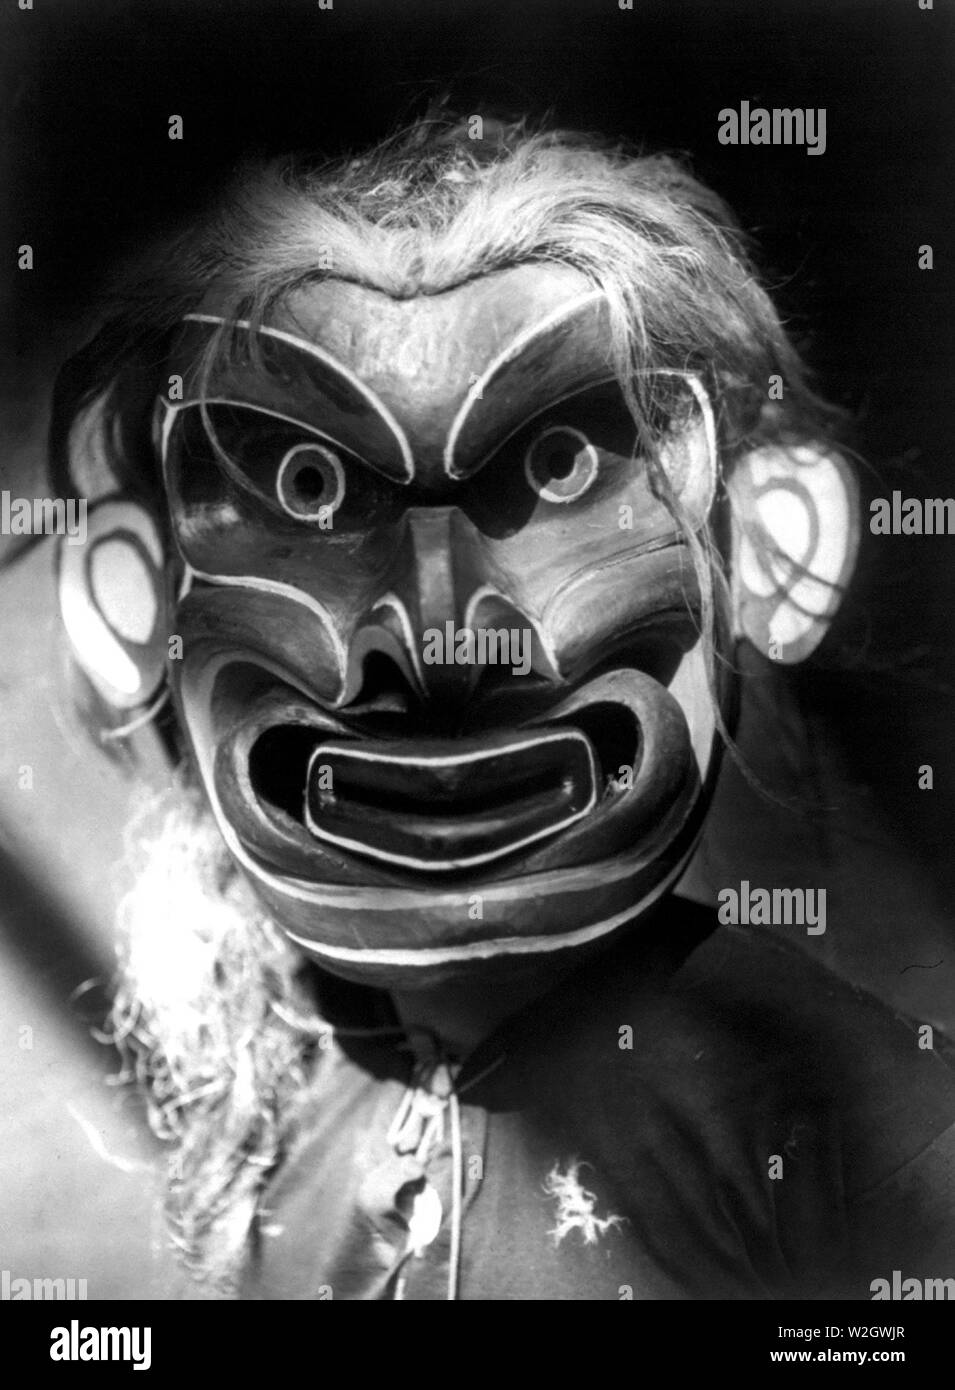 Edward S. Curits Indios Nativos Americanos - Kwakiutl persona vestida de criatura mítica Pgwis máscara (el hombre del mar) ca. 1914 Foto de stock